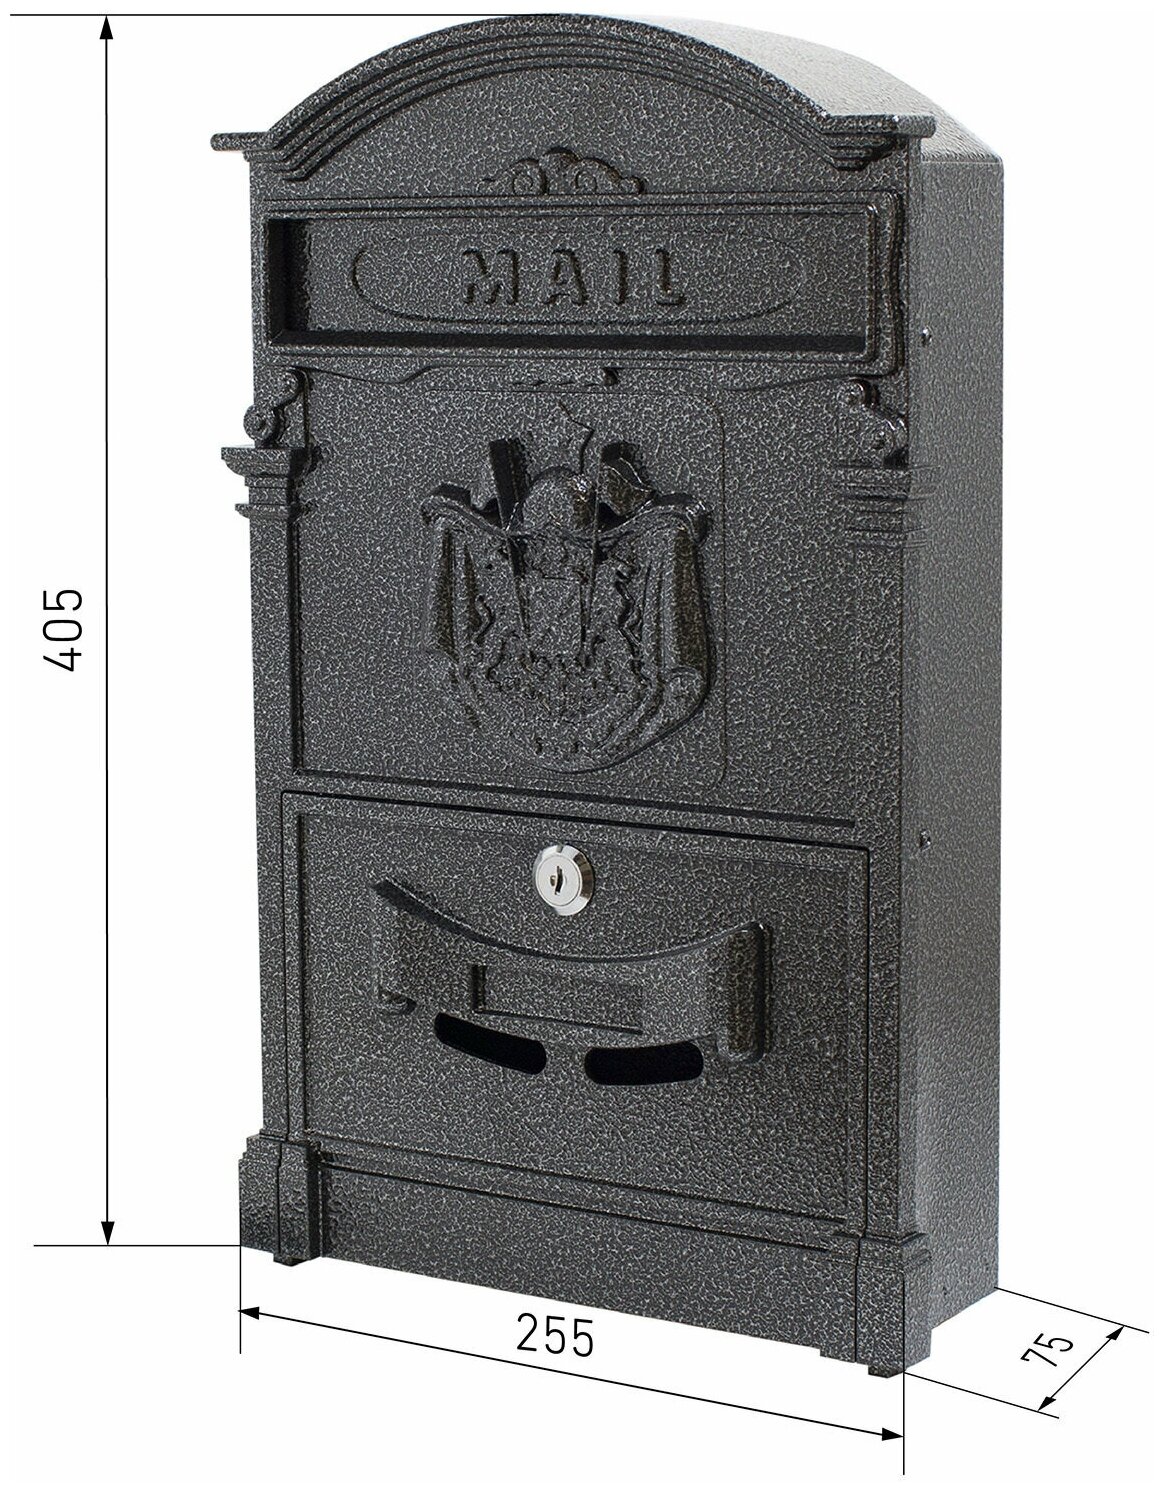 Почтовый ящик с замком уличный металлический для дома аллюр №4010 серебро